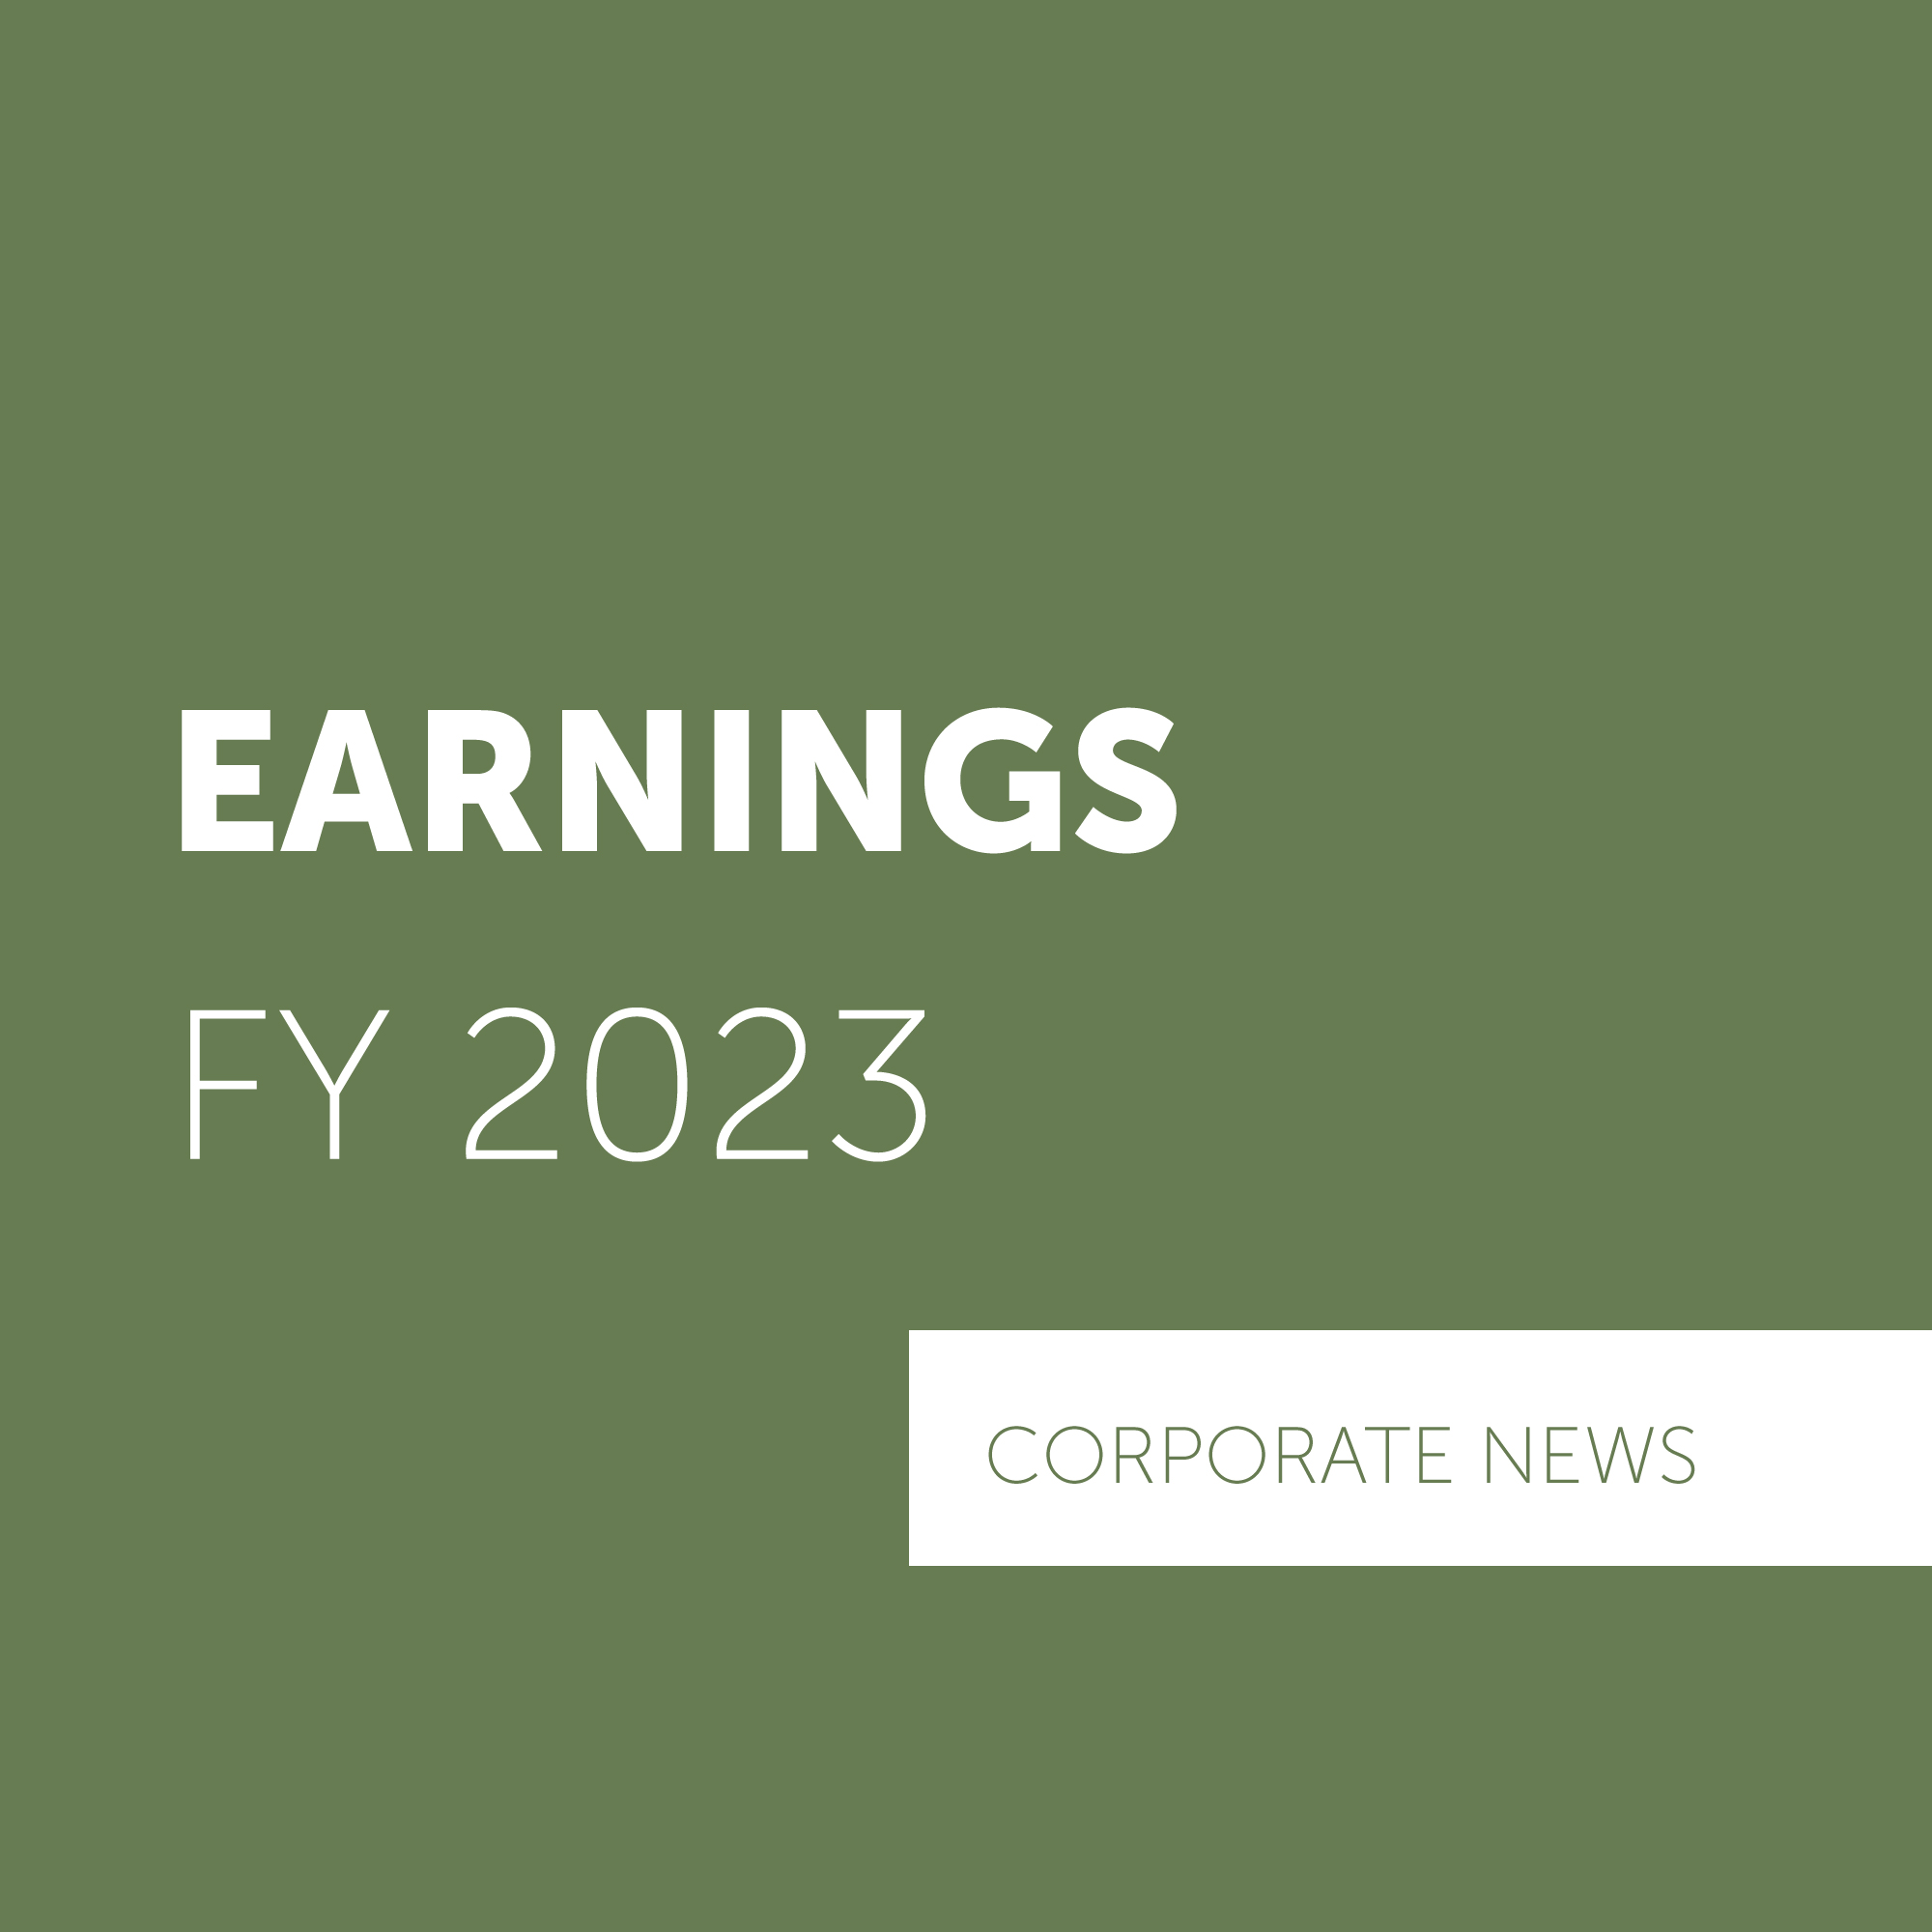 RAK Ceramics Announces FY 2023 Financial Results